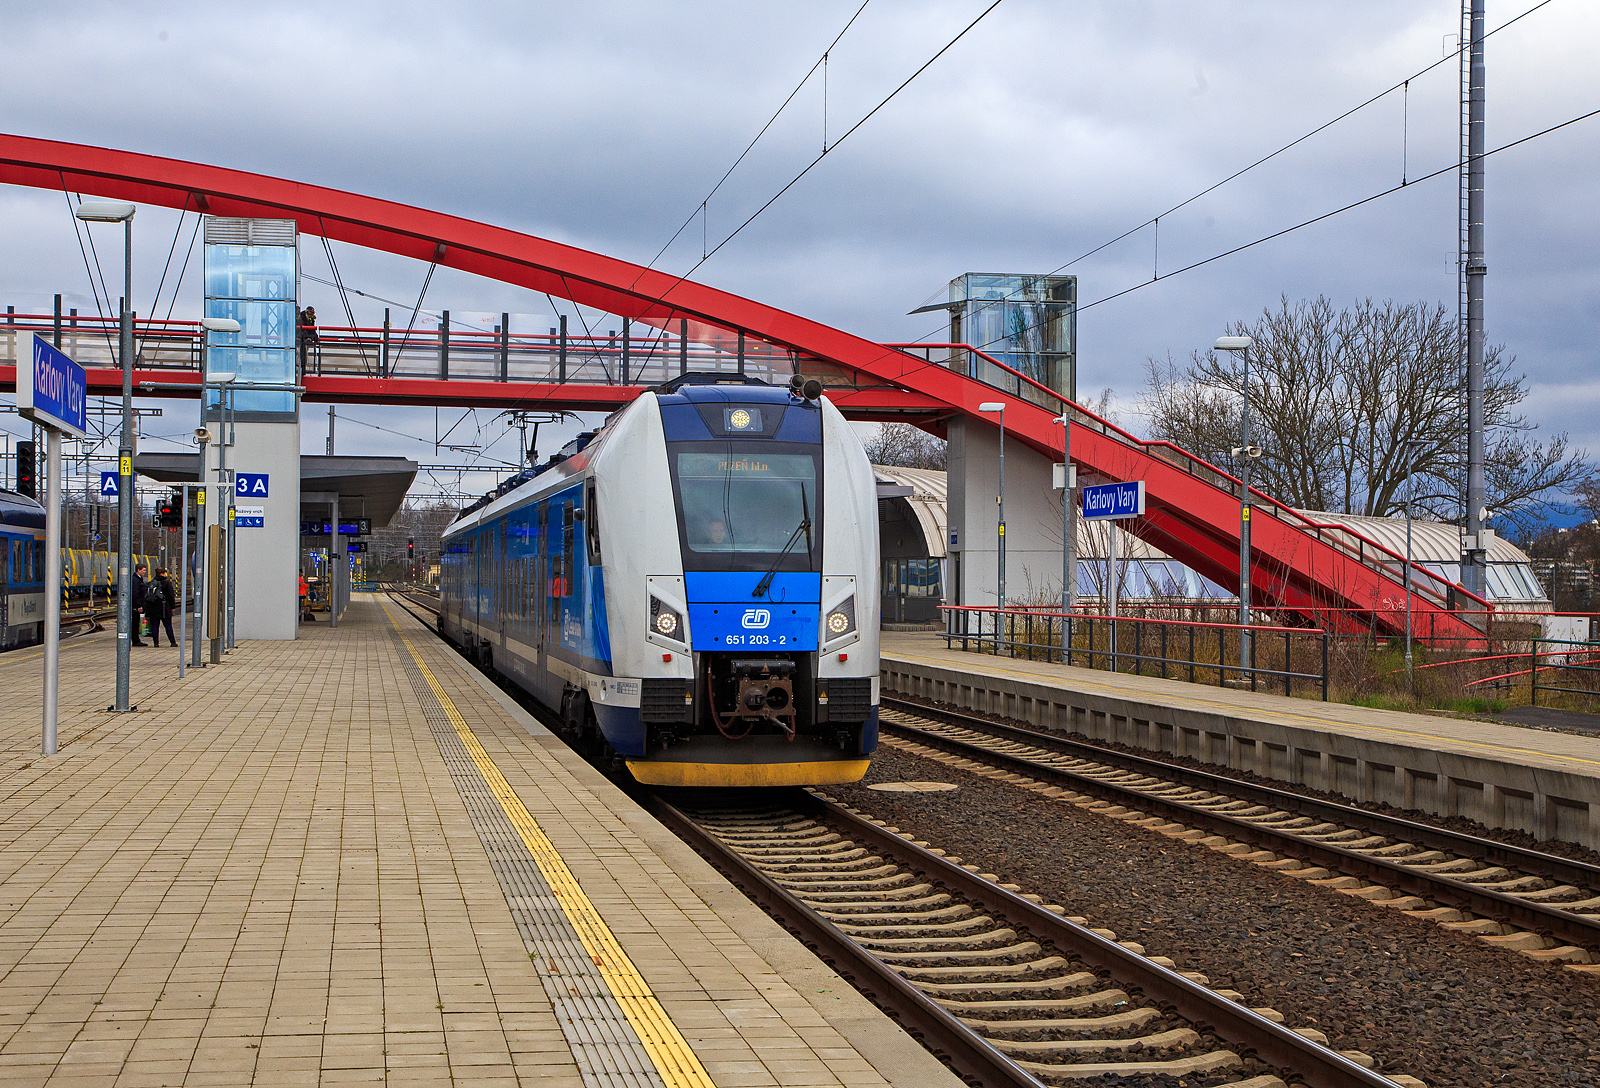 Der RegioPanter 651 203-2 / 650 203-3 (CZ-ČD 94 54 1 651 203-2  / CZ-ČD 94 54 1 650 203-3), ein zweiteiliger Zweisystem-Elektrotriebzug (3 kV DC und 25 kV, 50 Hz~) vom Typ ¦koda 15 Ev, der České dráhy (ČD) / Plzeňský Kraj (deutsch Pilsner Region) verlässt am 18.04.2023, als Sp nach Pilsen (Plzeň) via Cheb (Eger), den Bahnhof Karlovy Vary (Karlsbad oberer Bahnhof).

Der zweiteiliger zweisystemfähiger (3 kV DC und 25 kV, 50 Hz~) Elektrotriebzug vom Typ ¦koda 15Ev/HV14 wurde 2021 von ¦koda Vagonka a.s. in Ostrava (ex ČKD Vagónka Studénka) gebaut.

Die einstöckigen Elektrotriebzüge RegioPanter stellen eine völlig neue Generation von modernen Niederflur-Fahrzeugen dar. Sie werden mit einem Stromsystem (3 kV DC) und mit zwei Stromsystemen (3 kV DC und  25 kV / 50 Hz AC) bei der wie die hier gezeigten BR 650 / 651 angeboten. Die ČD hat zwei- und dreiteilige Einheiten bestellt, laut Hersteller sind bis zu sechsteilige Kompositionen möglich. Bis zu vier Wagenzüge sind kuppelbar. Die BR 650.2 / 651.2 werden als Typ ¦koda 15 Ev und sind gegenüber der BR 650.0 / 651.0 (¦koda 7 Ev) modifiziert. Beide Wagenteile sind jeweils mit einem Triebdrehgestell mit zwei Asynchronmotoren und einem üblichen Laufdrehgestell ausgestattet. Im Vergleich zu den vorhanden Zwei-Wagen-Zügen verbraucht der Zug RegioPanter bis um eine Hälfte  weniger Strom, und zwar auch dank des Systems der Energierückgewinnung, die beim Bremsen entsteht. Die einstöckige regionale Einheit ist als ein völlig durchgängiger Zug konzipiert, d.h. ohne Innenzwischenwände und Türen.  Offen ist auch der Übergang zwischen den Wagen. Die meiste elektrische Ausrüstung befindet sich auf dem Dach, wodurch sich der Fahrgastraum erheblich erweitert. Die Drehstrom-Traktionsmotoren vom Typ ¦koda ML 3942 K/4 besitzen eine Leistung von je 340 kW.

TECHNISCHE DATEN:
Spurweite: 1.435 mm
Achsformel: Bo‘2‘+2‘Bo‘
Länge über Kupplung: 52.900 mm
Breite: 2.820 mm
Höhe: 4.260 mm
Drehzapfenabstand: 19.000 mm
Achsabstand im Drehgestell: 2.400 mm
Raddurchmesser: 850 (neu) / 770 mm (abgenutzt)
Dauerleistung: 1.360 kW (4 x 340 kW)
Höchstgeschwindigkeit: 160 km/h 
May. Beschleunigung: 1,1 m/s²
Stundenzugkraft: 131 kN
Kleinster befahrbarer Gleisbogen: 125 m
Stromsystem: 3 kV DC und  25 kV / 50 Hz AC
Leergewicht: 102,8 t
Anzahl der Sitzplätze: 140, davon  8 in der 1. Klasse
Anzahl der Stehplätze: 183
Plätze für Fahrräder/Kinderwagen: 9 / 4
